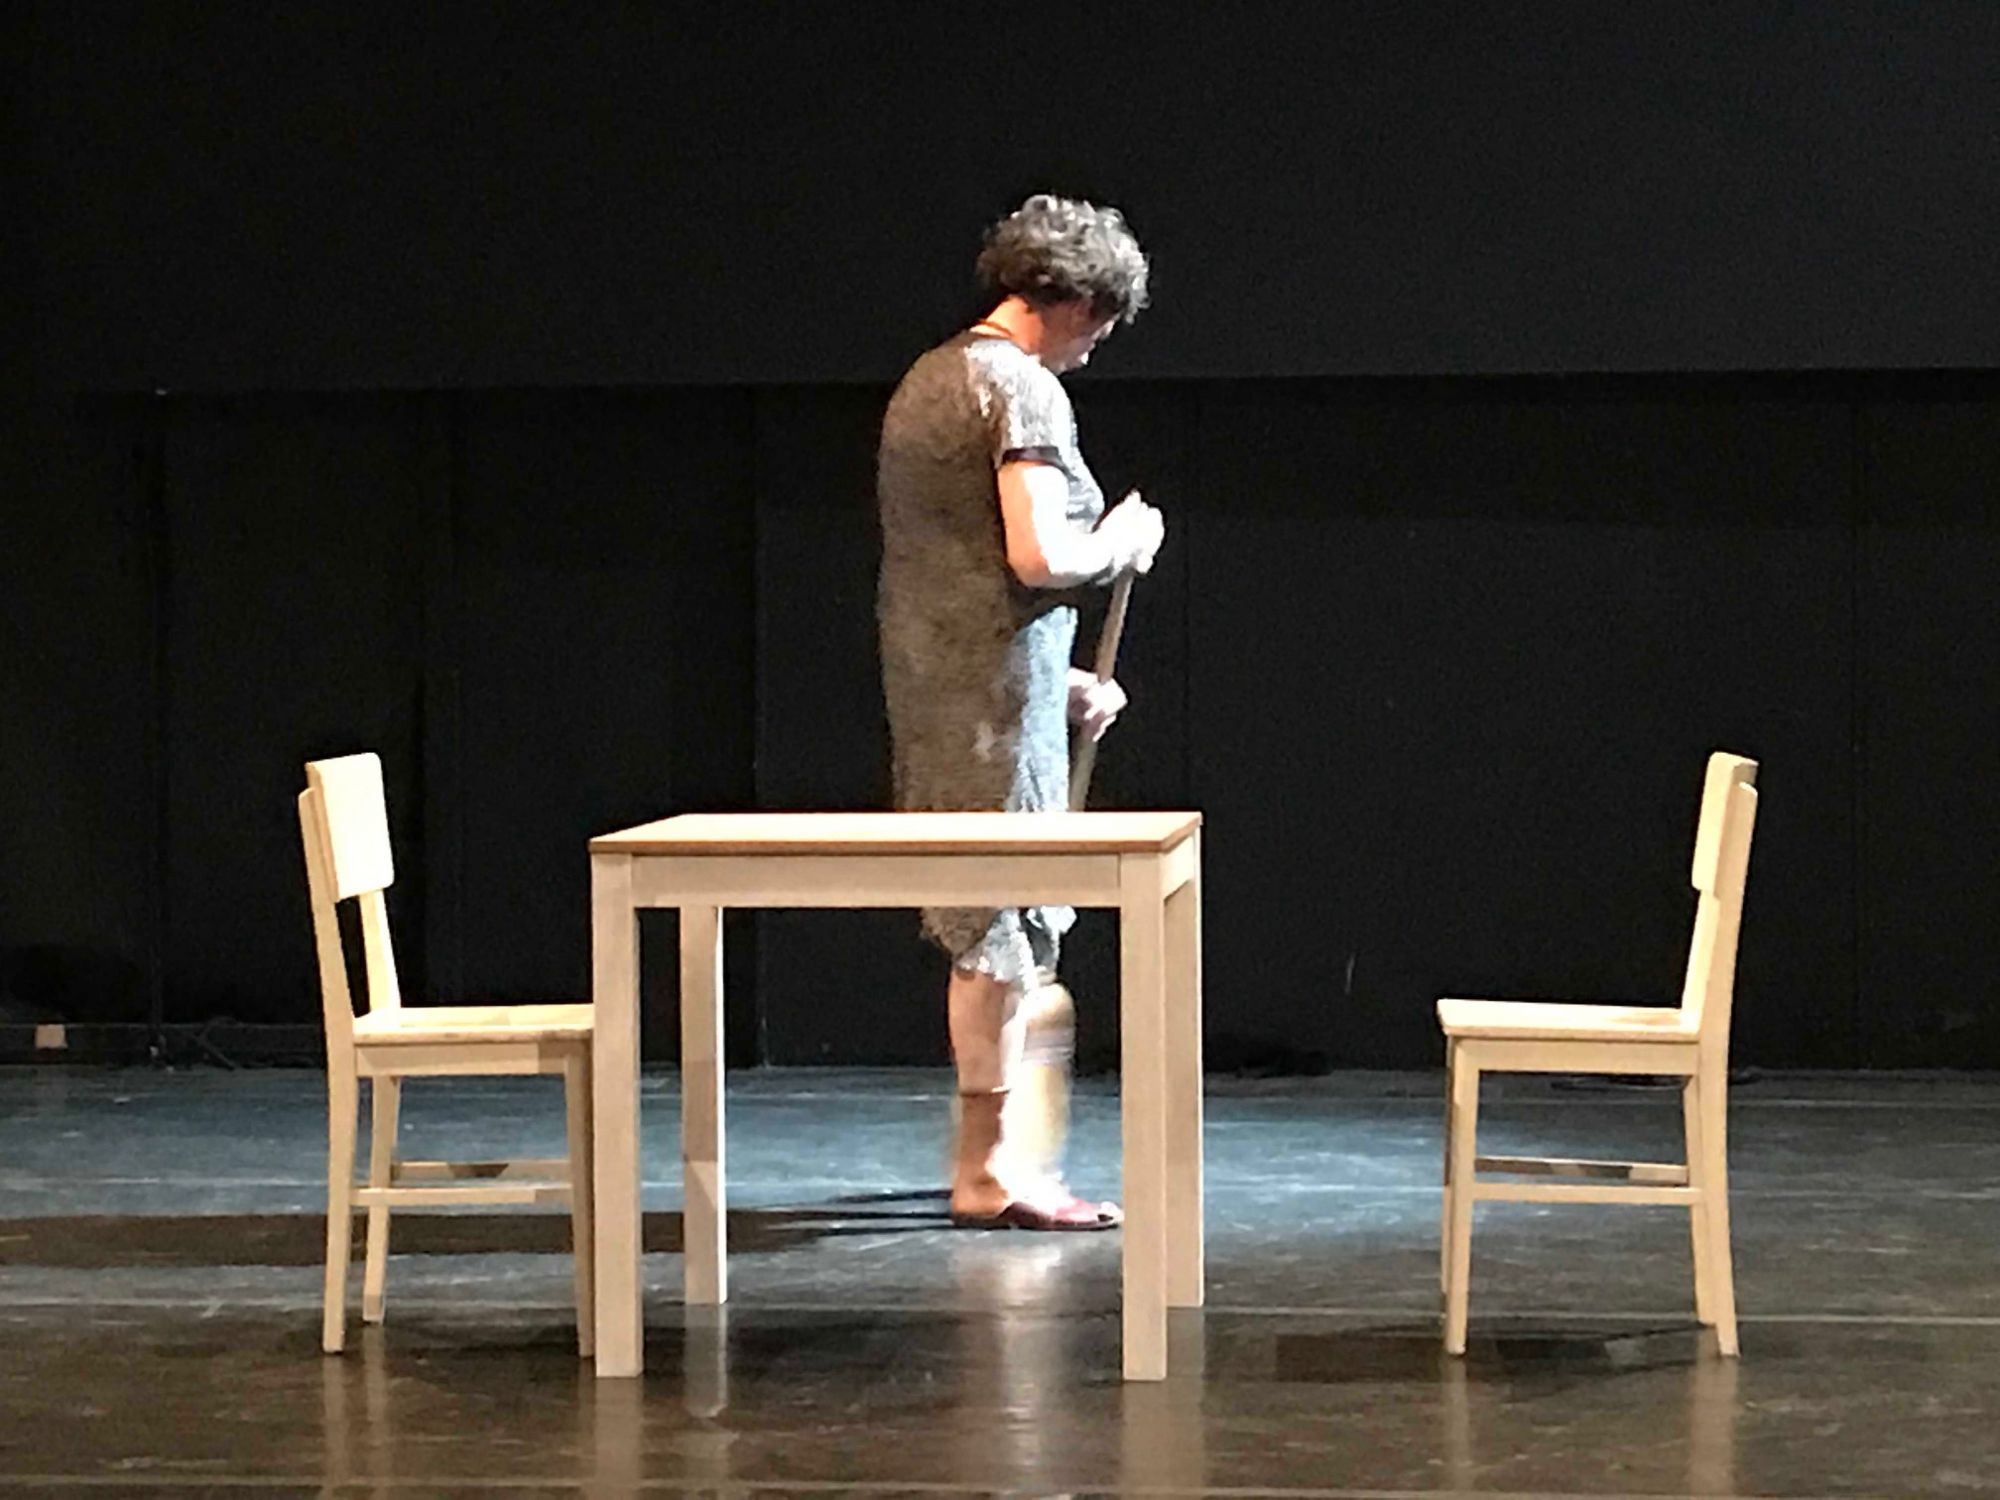 La lezione - Teatro la Foce, 30 marzo 2019